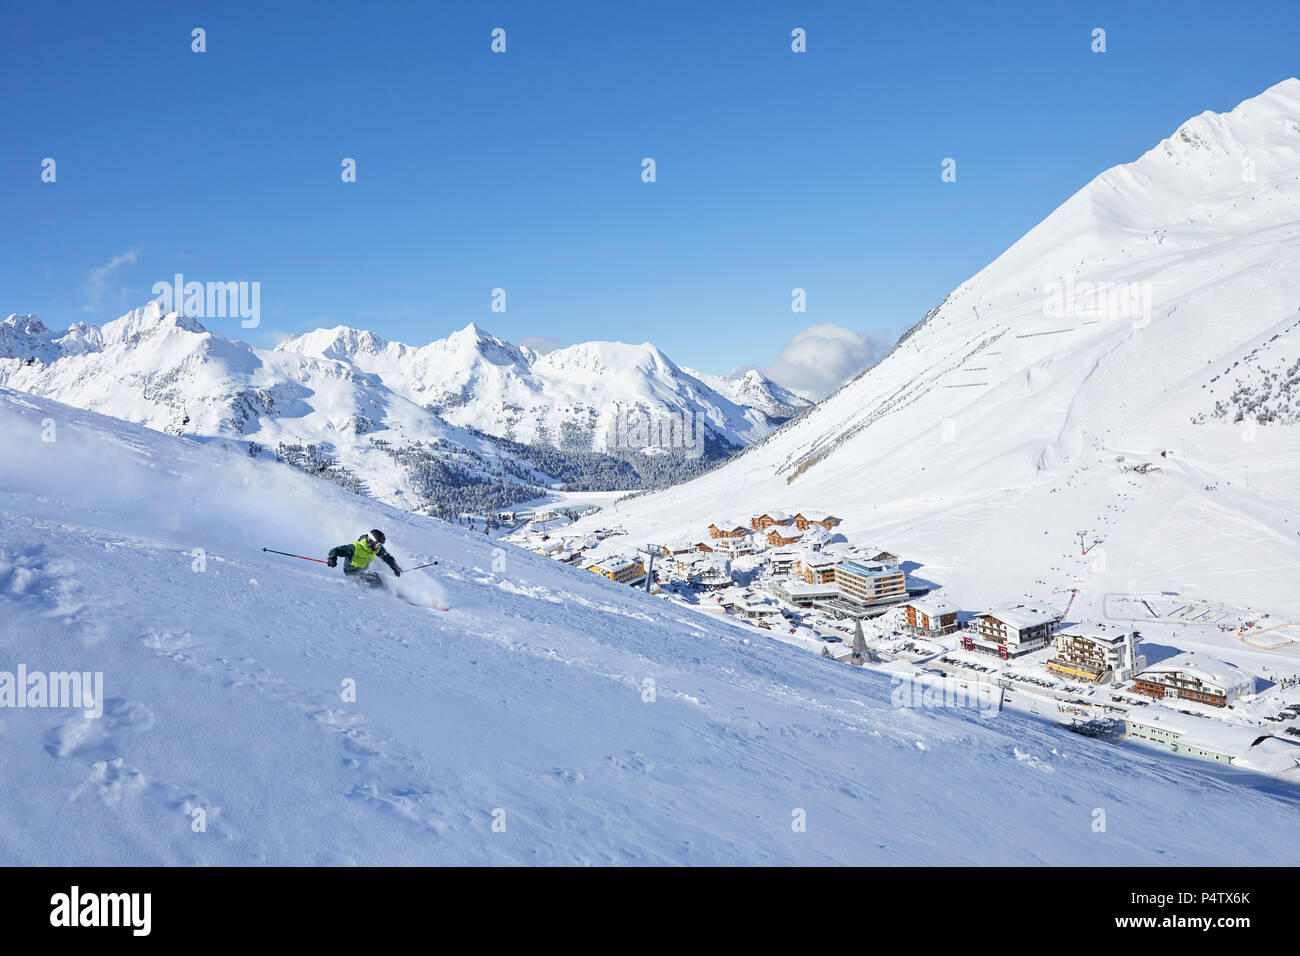 Austria, Tirolo, Kuehtai, uomo sci nel paesaggio invernale Foto Stock